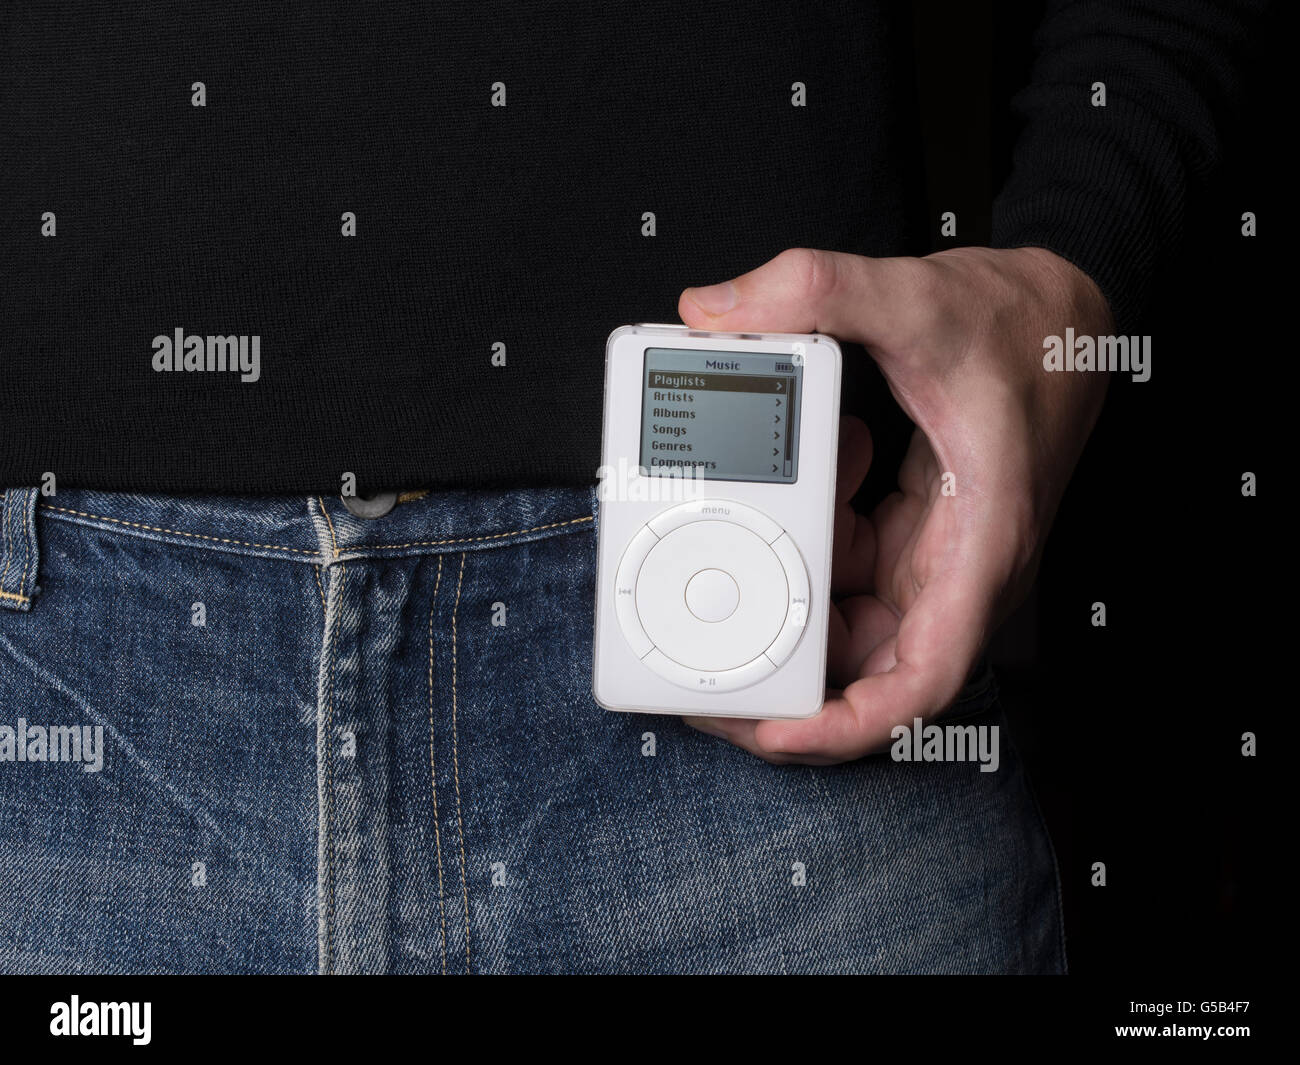 Apple iPod première génération, avec la molette de défilement mécanique. publié le 23 octobre 2001 Banque D'Images